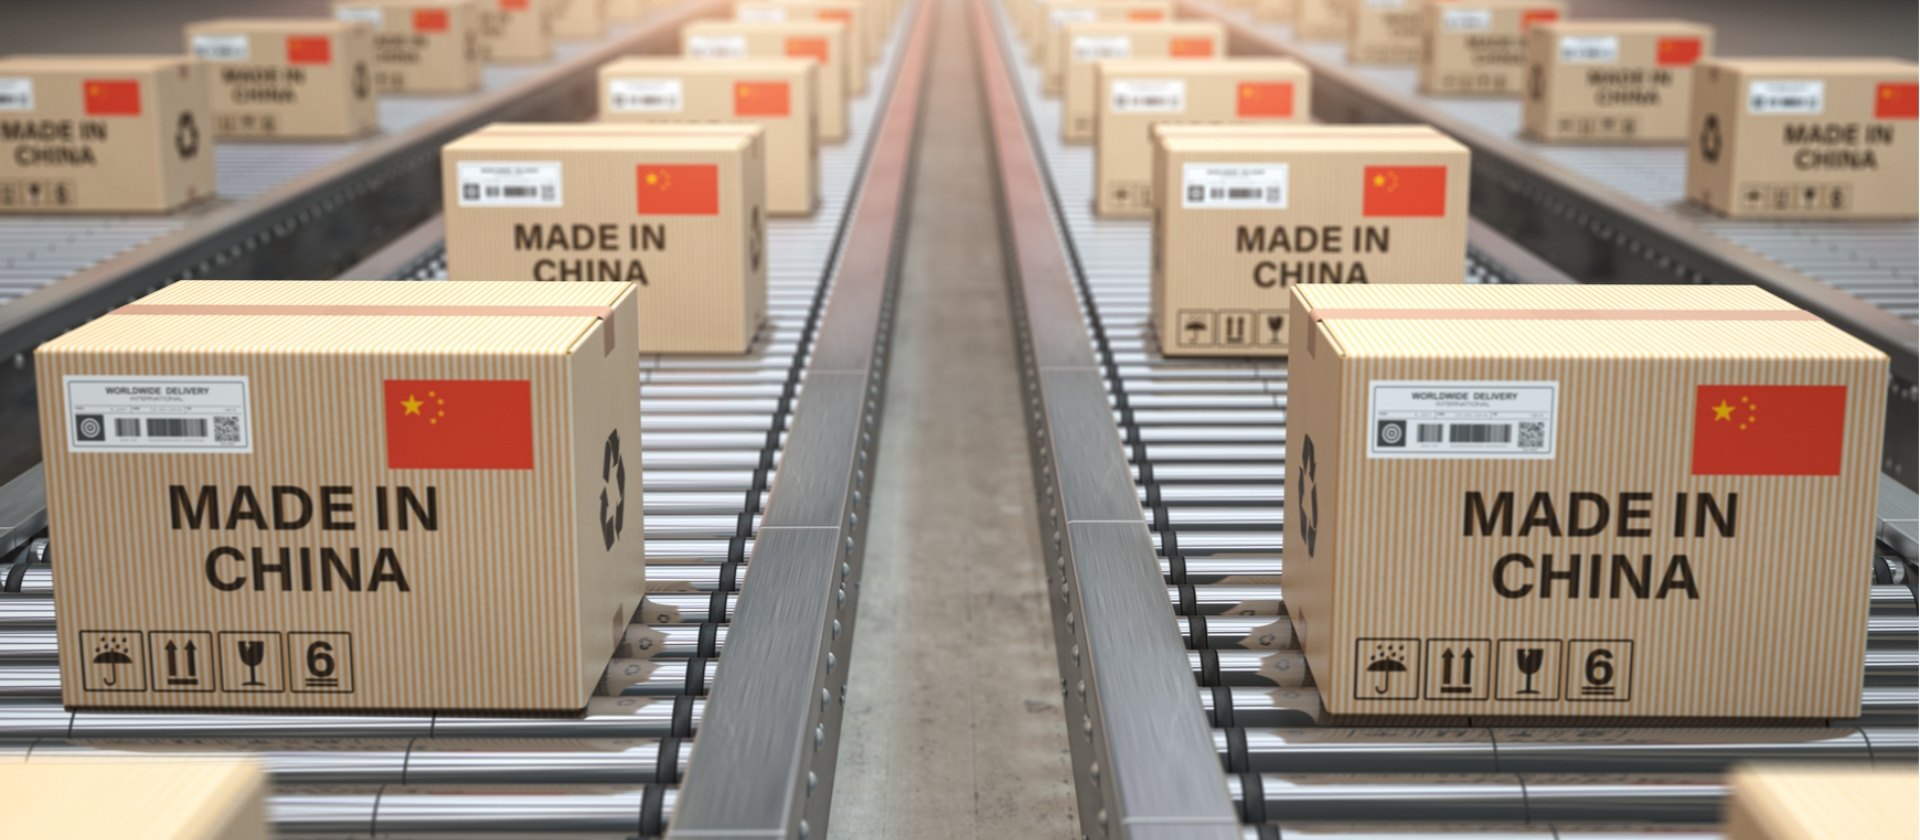 Auf dem Förderband werden Boxen befördert, die mit Made in China gekennzeichnet sind.